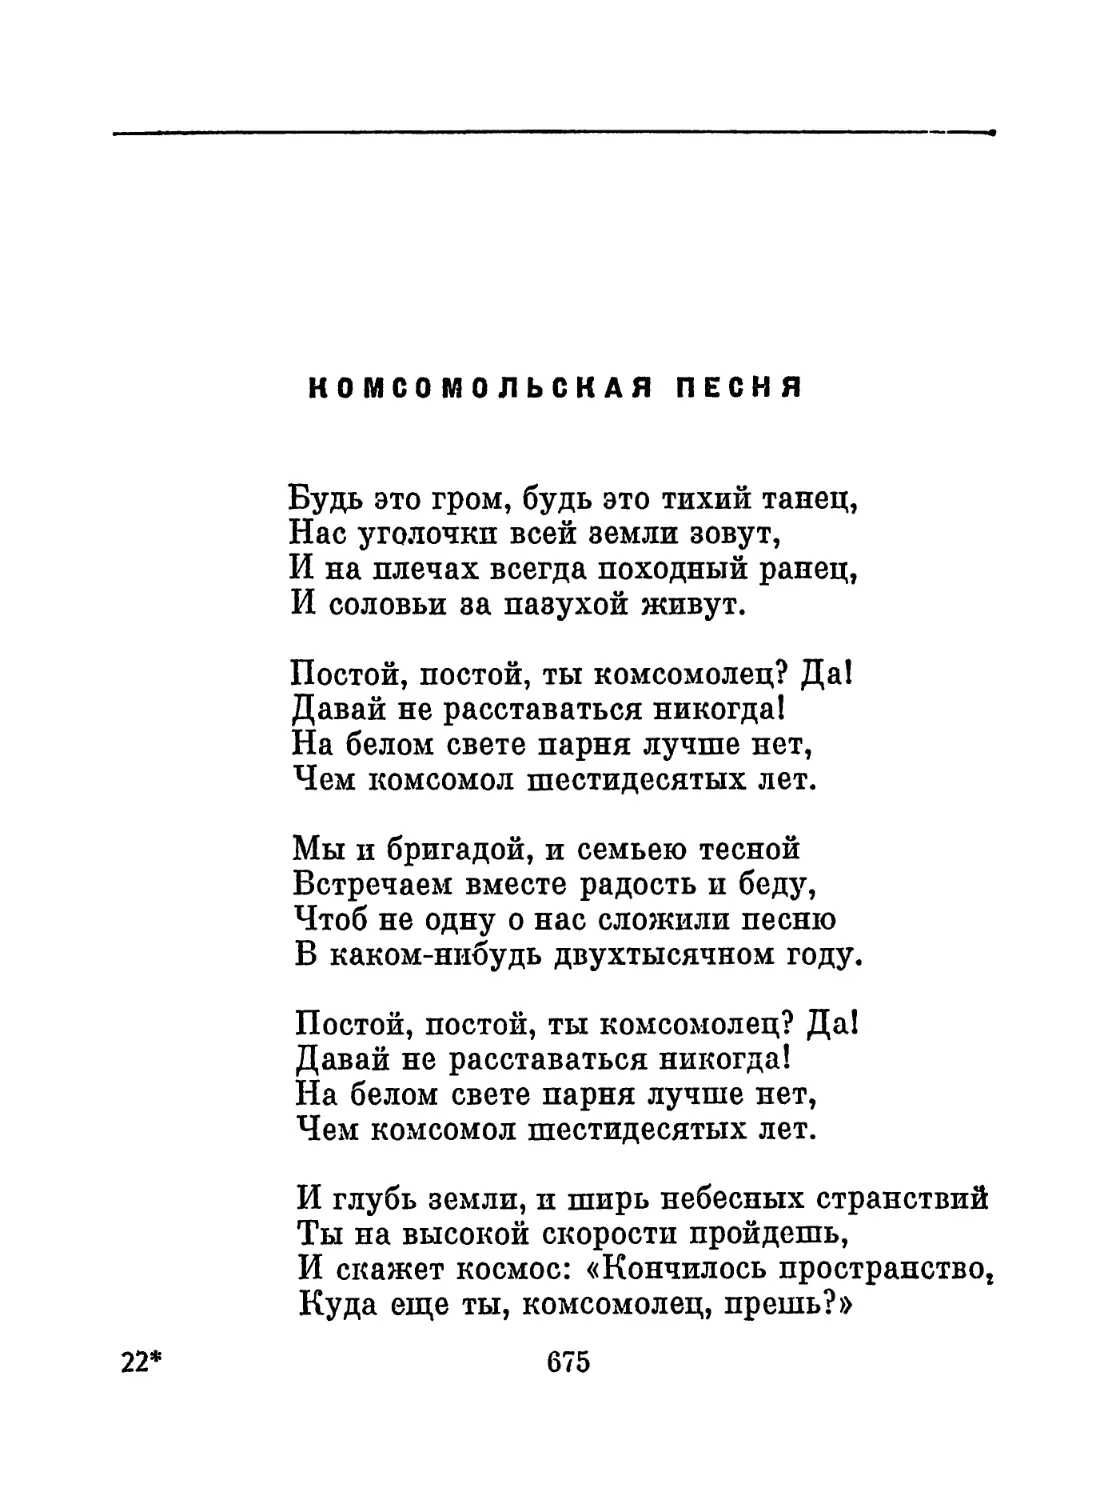 Комсомольская песня